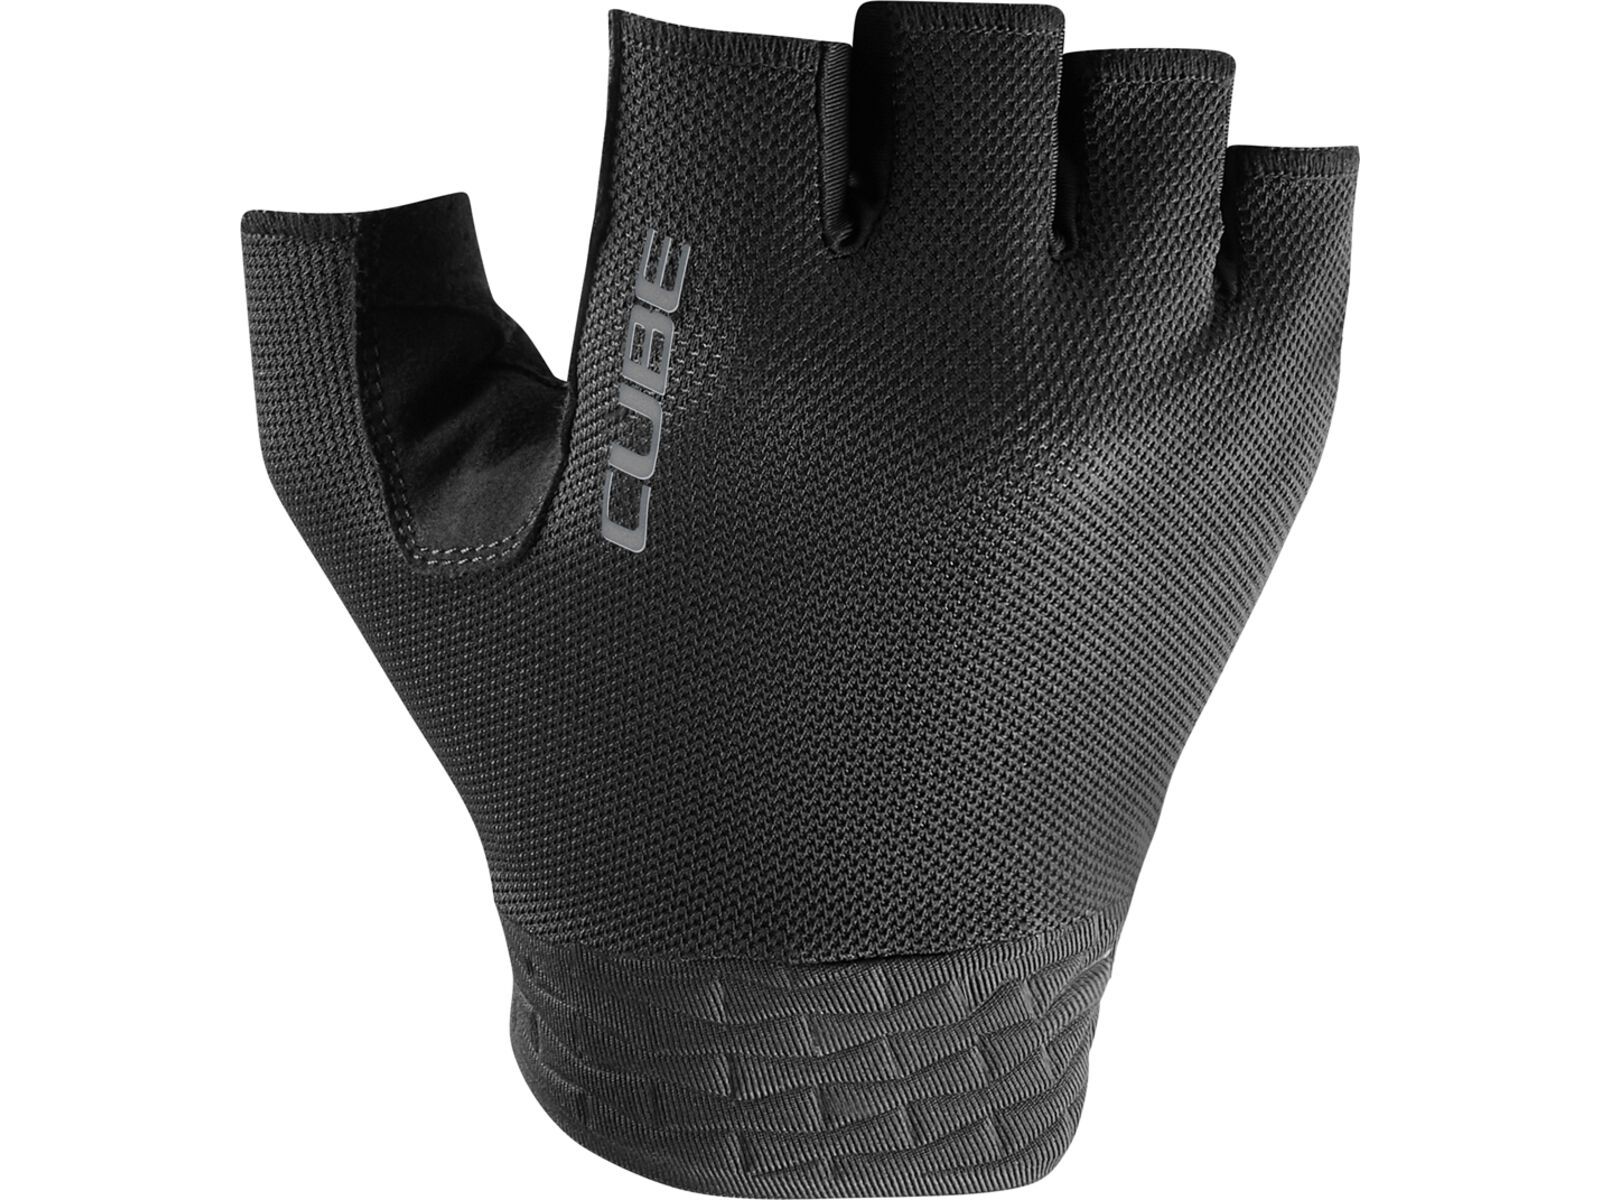 Cube Handschuhe Performance Kurzfinger, black | Bild 1